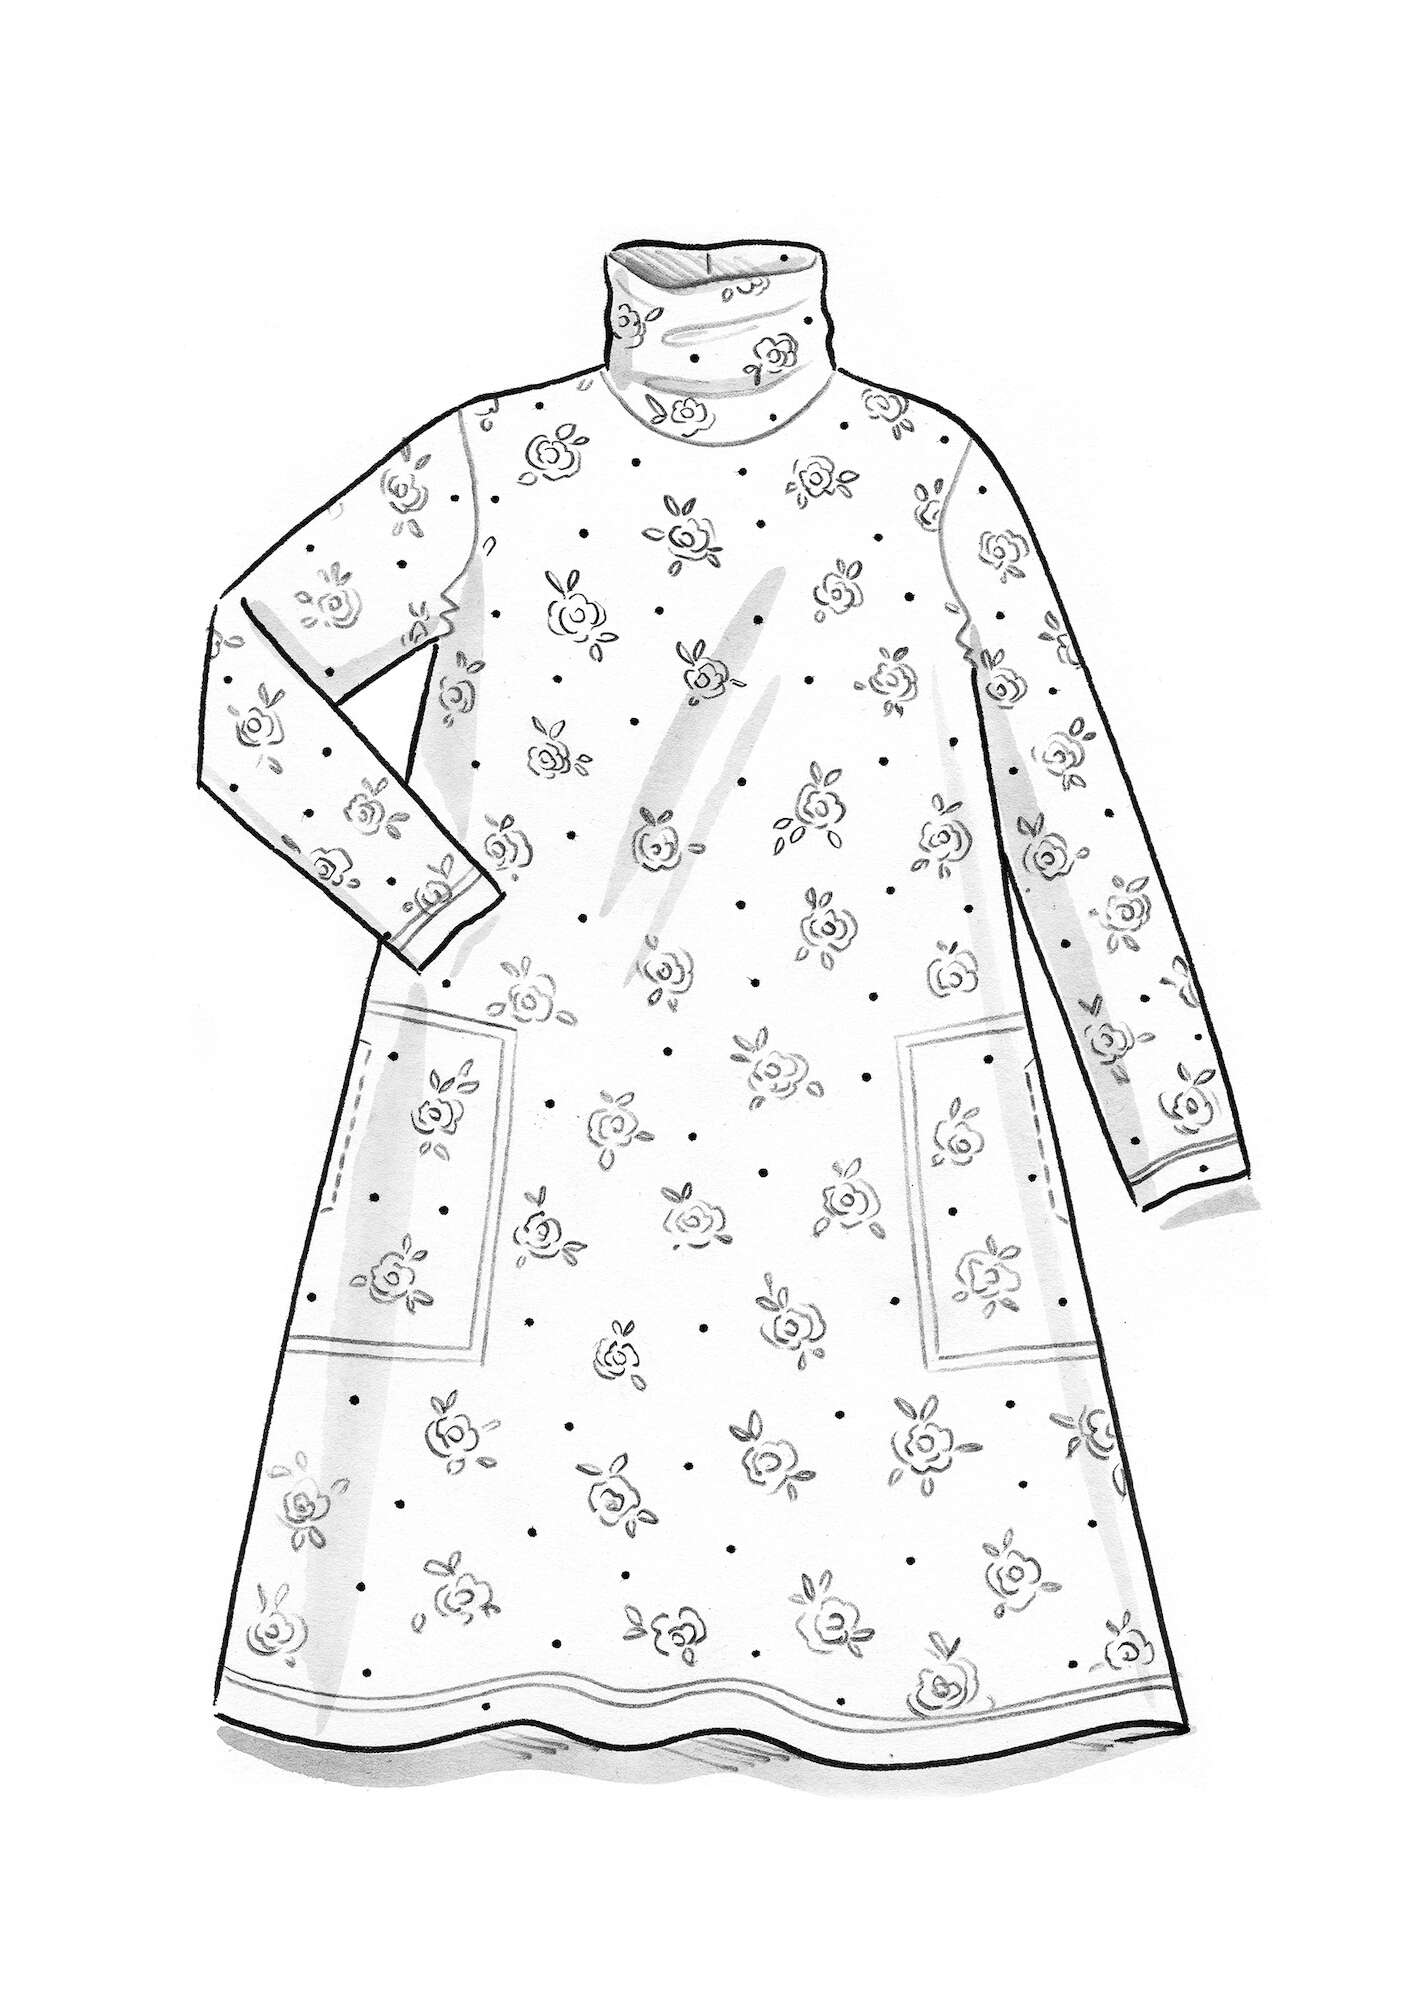 Tricot jurk  Öland  van lyocell/elastaan zwart/dessin